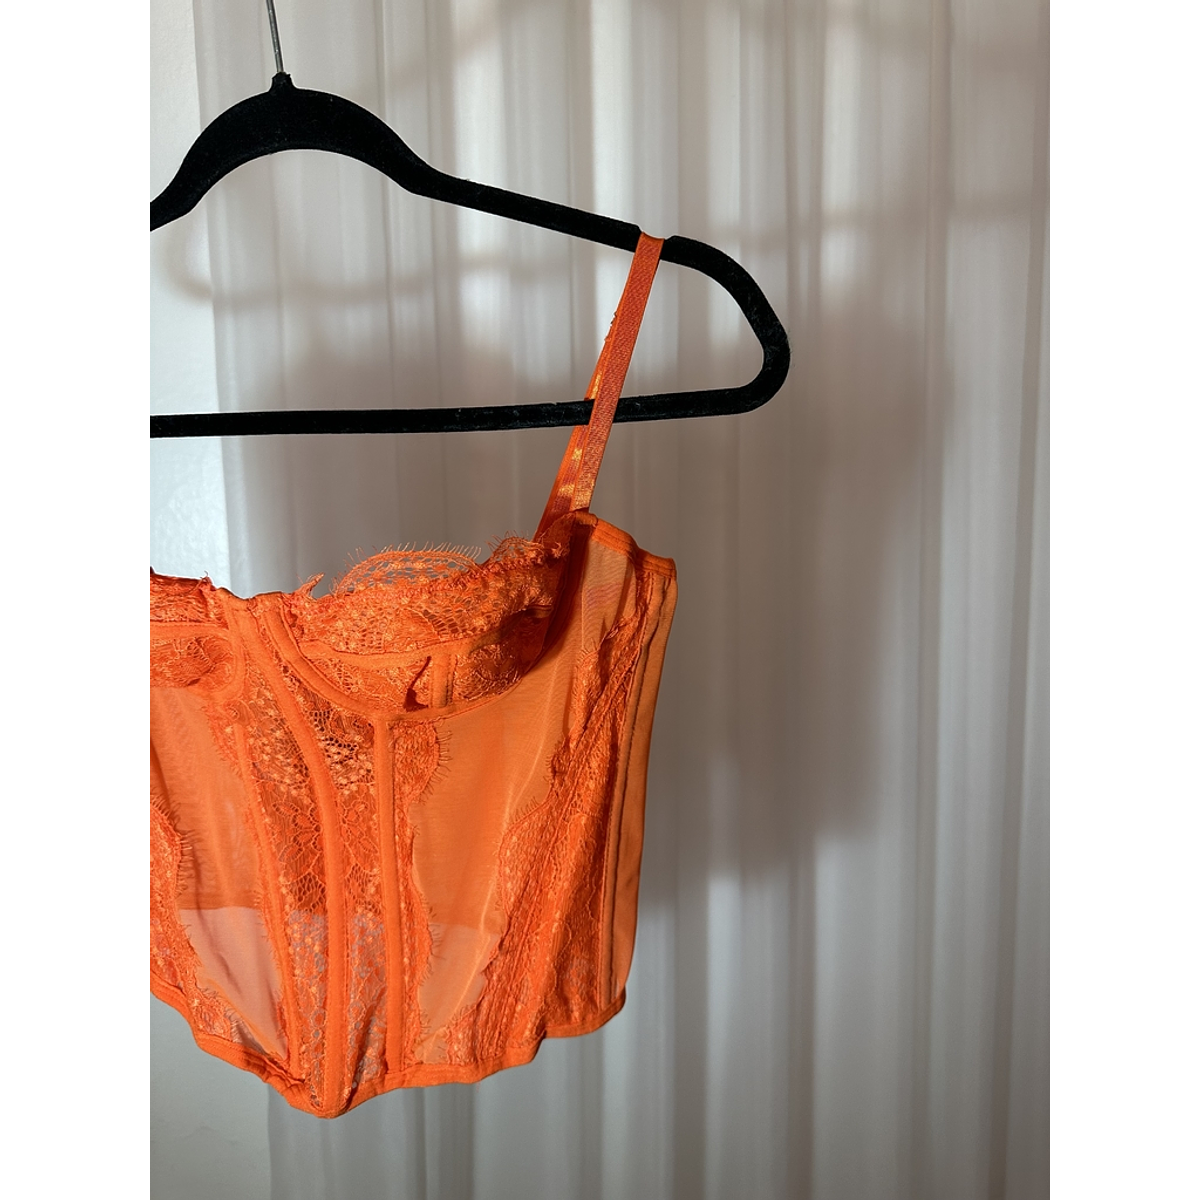 Blusa naranja corset LC